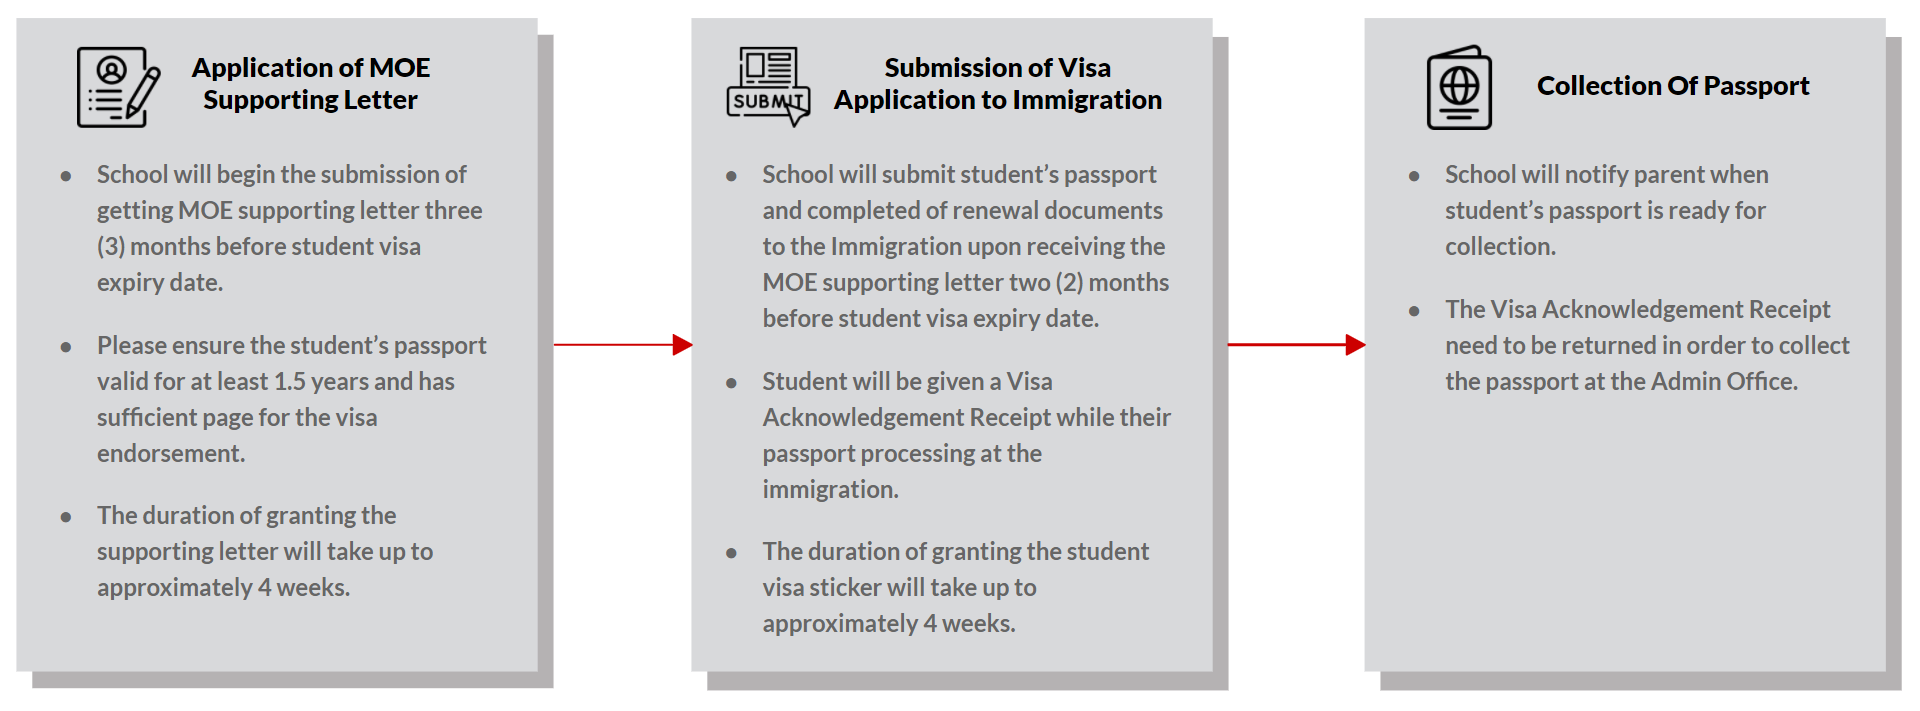 Renewal of Student Visa